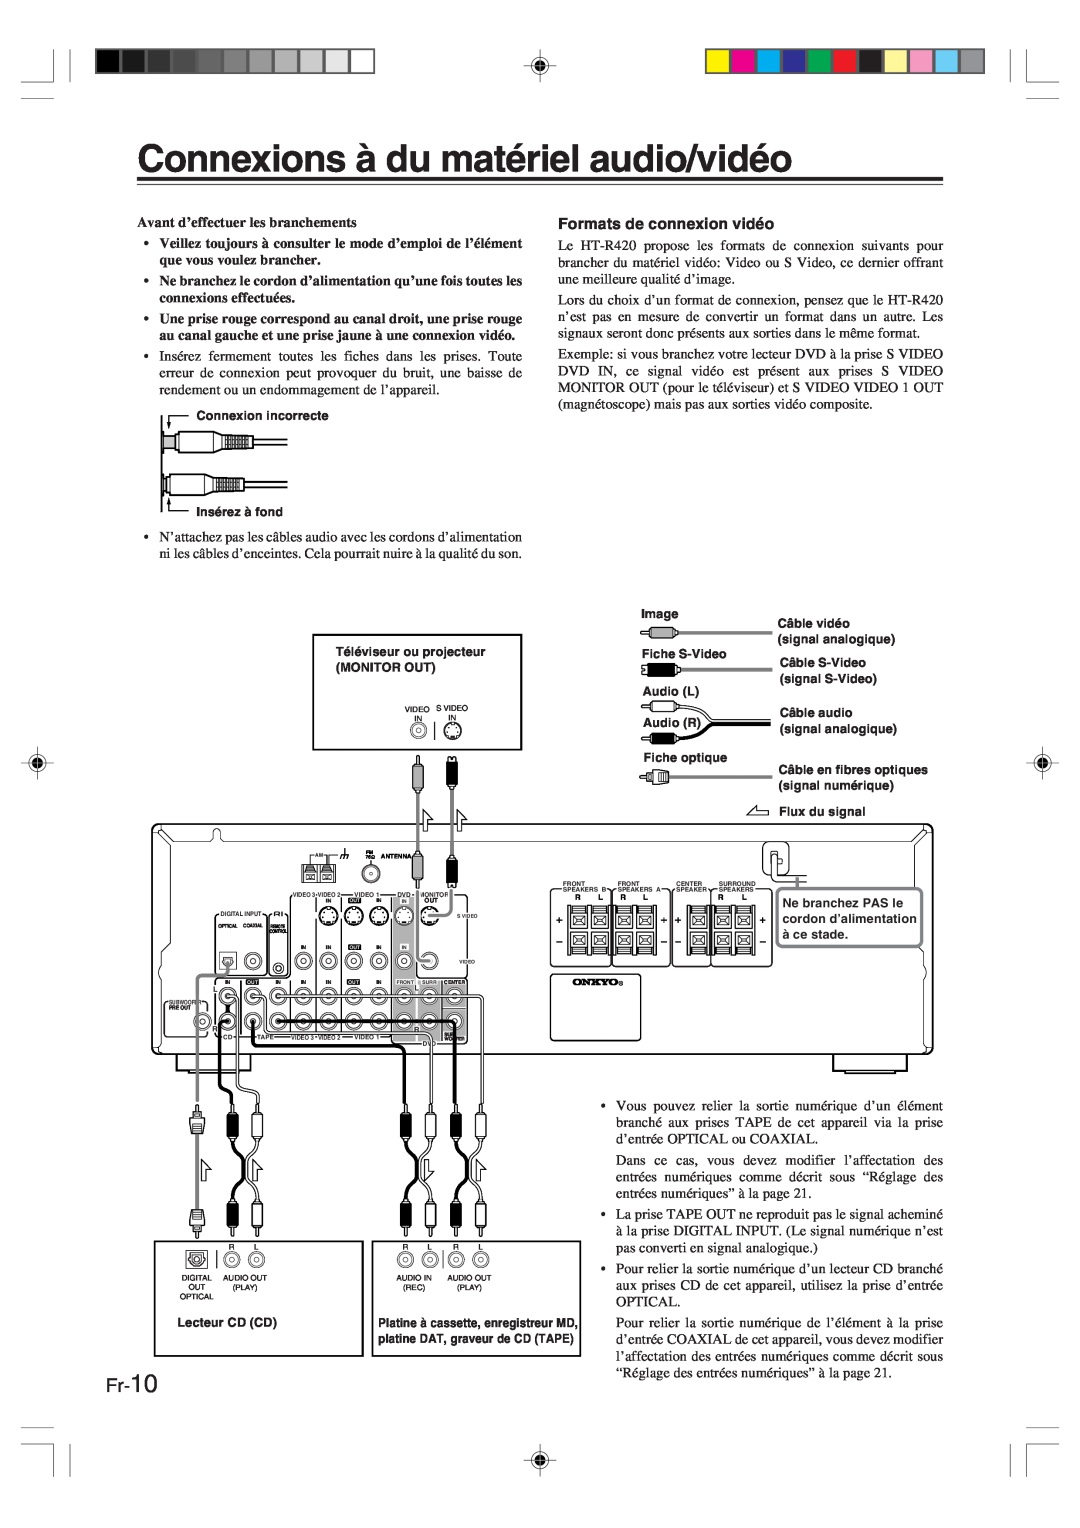 Onkyo HT-R420 manual Connexions à du matériel audio/vidéo, Fr-10, Avant d’effectuer les branchements 